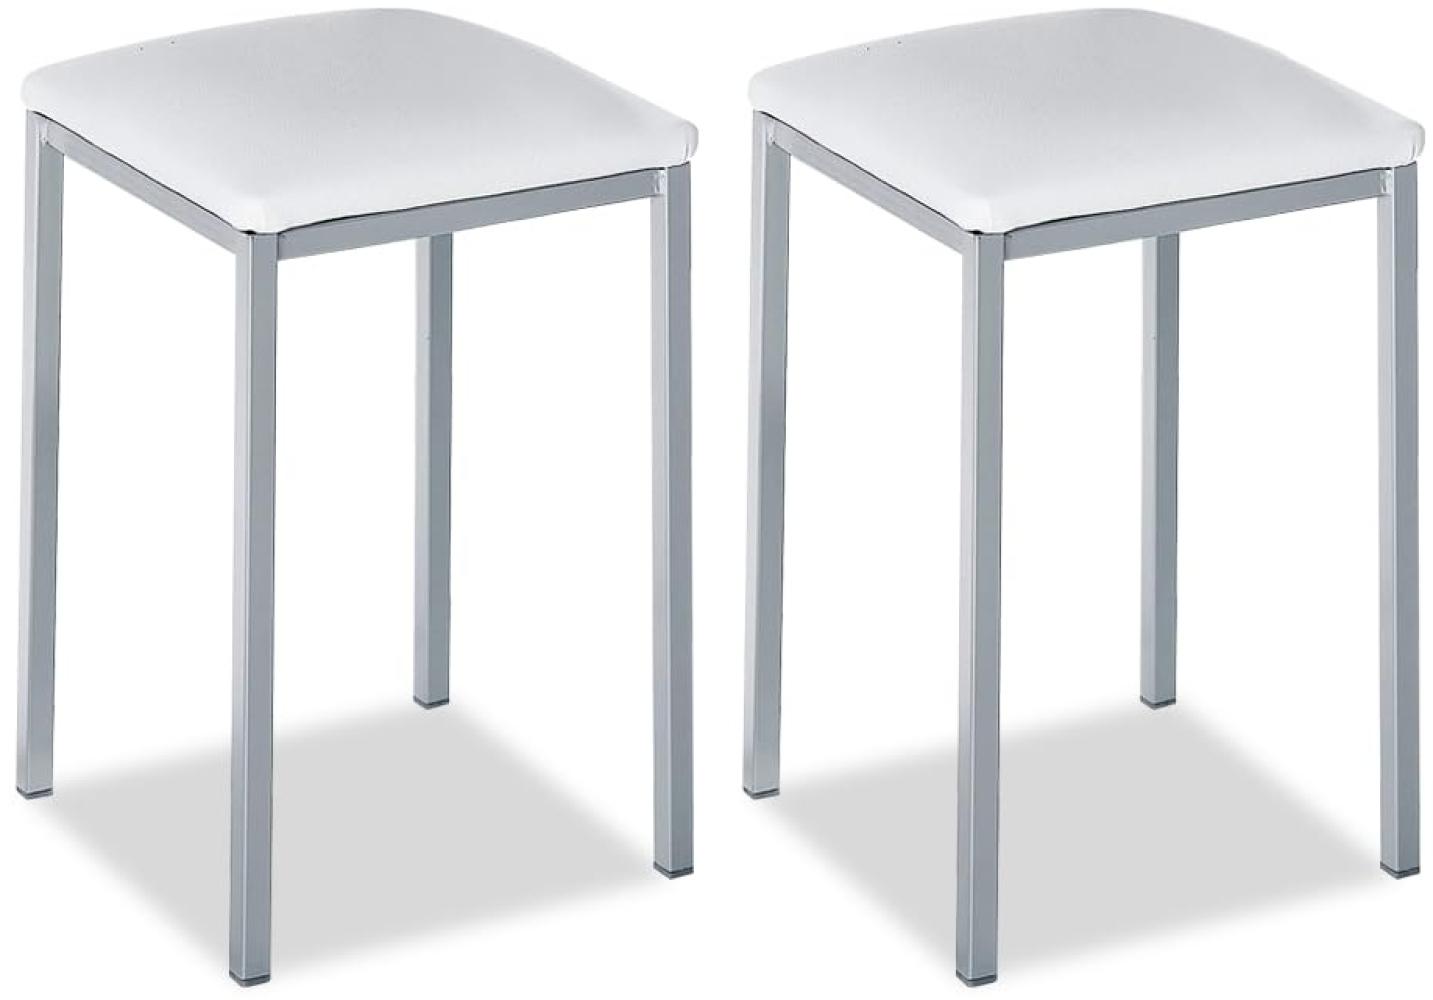 ASTIMESA - Gepolsterter Küchenhocker - Solide und Feste Struktur - Gestell Farbe Aluminium und Sitzfläche aus Kunstleder - Sitzfarbe: Weiß. Lieferumfang: 2 Stück, Maße: 35 x 35 x 45 cm Bild 1